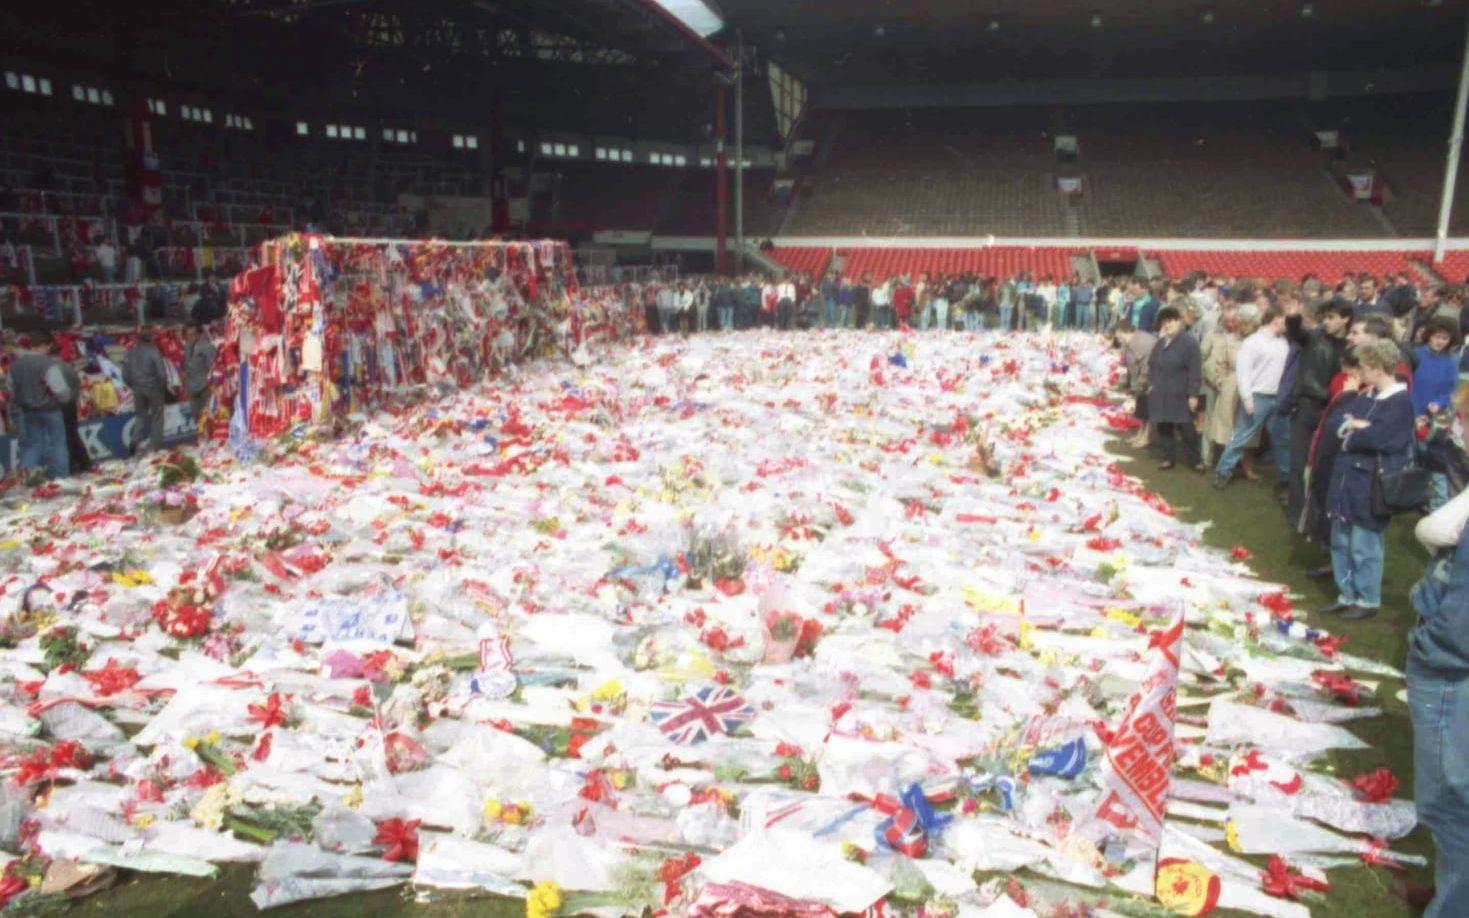 Många Liverpoolsupportrar kom sent till arenan, och för att få in dem snabbare öppnades en "extraingång". Problemet var att det varken fanns några poliser eller publikvärdar som kunde dirigera dem, och det blev fullständigt kaos. Foto: TT